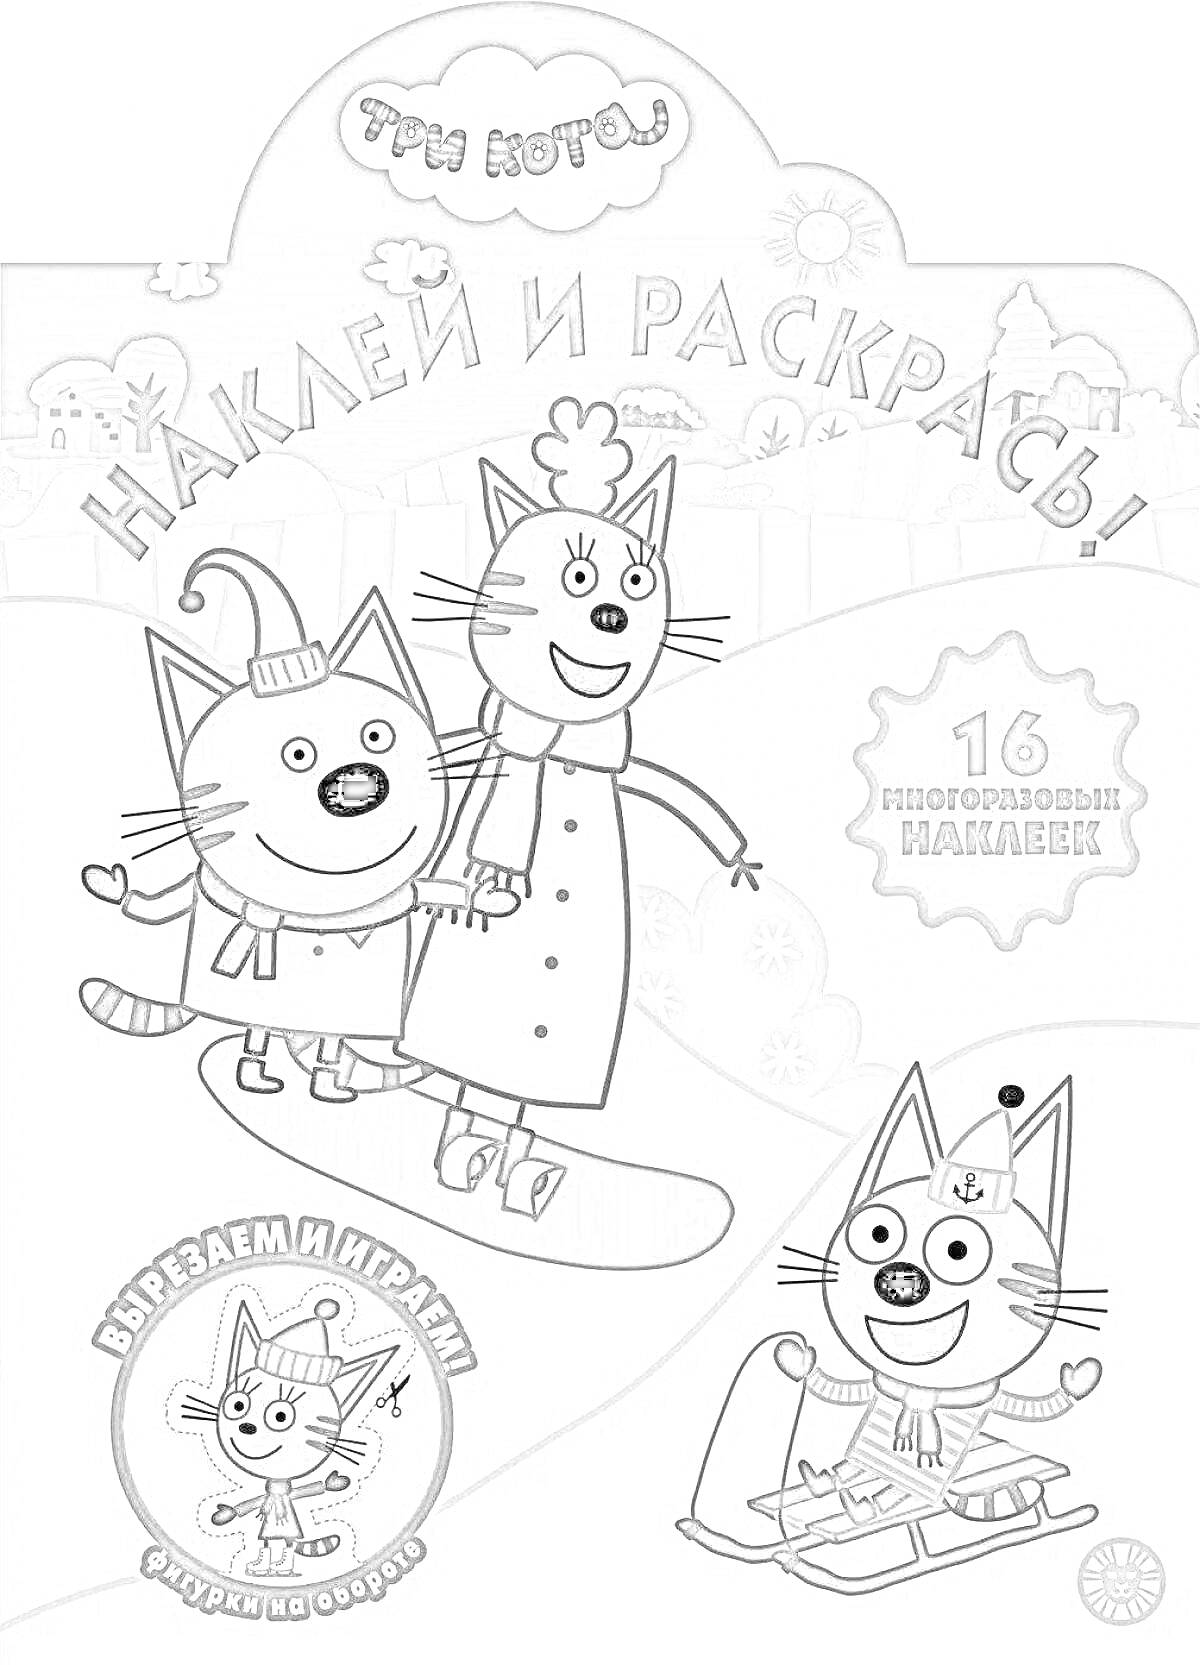 Раскраска Наклей и раскрась! Три кота, 16 многоразовых наклеек, вырезаем и играем, фигурки на общем фоне